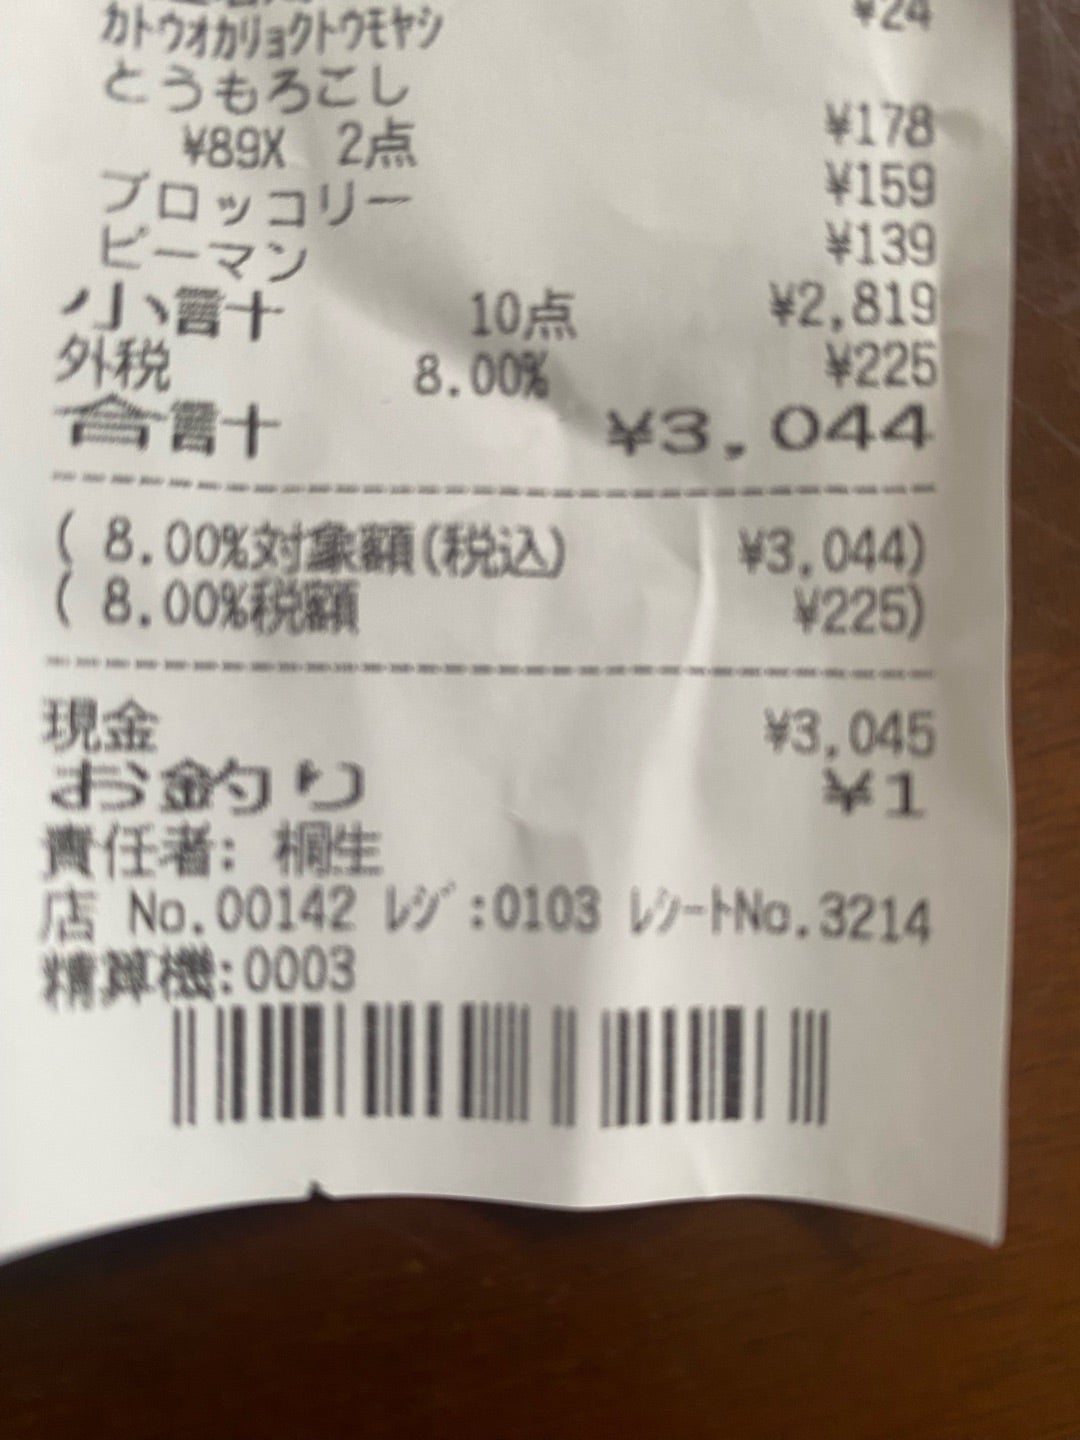 【写真・画像】 原田龍二の妻、1本89円だった予定になかった購入品「娘のおやつですね」 　1枚目